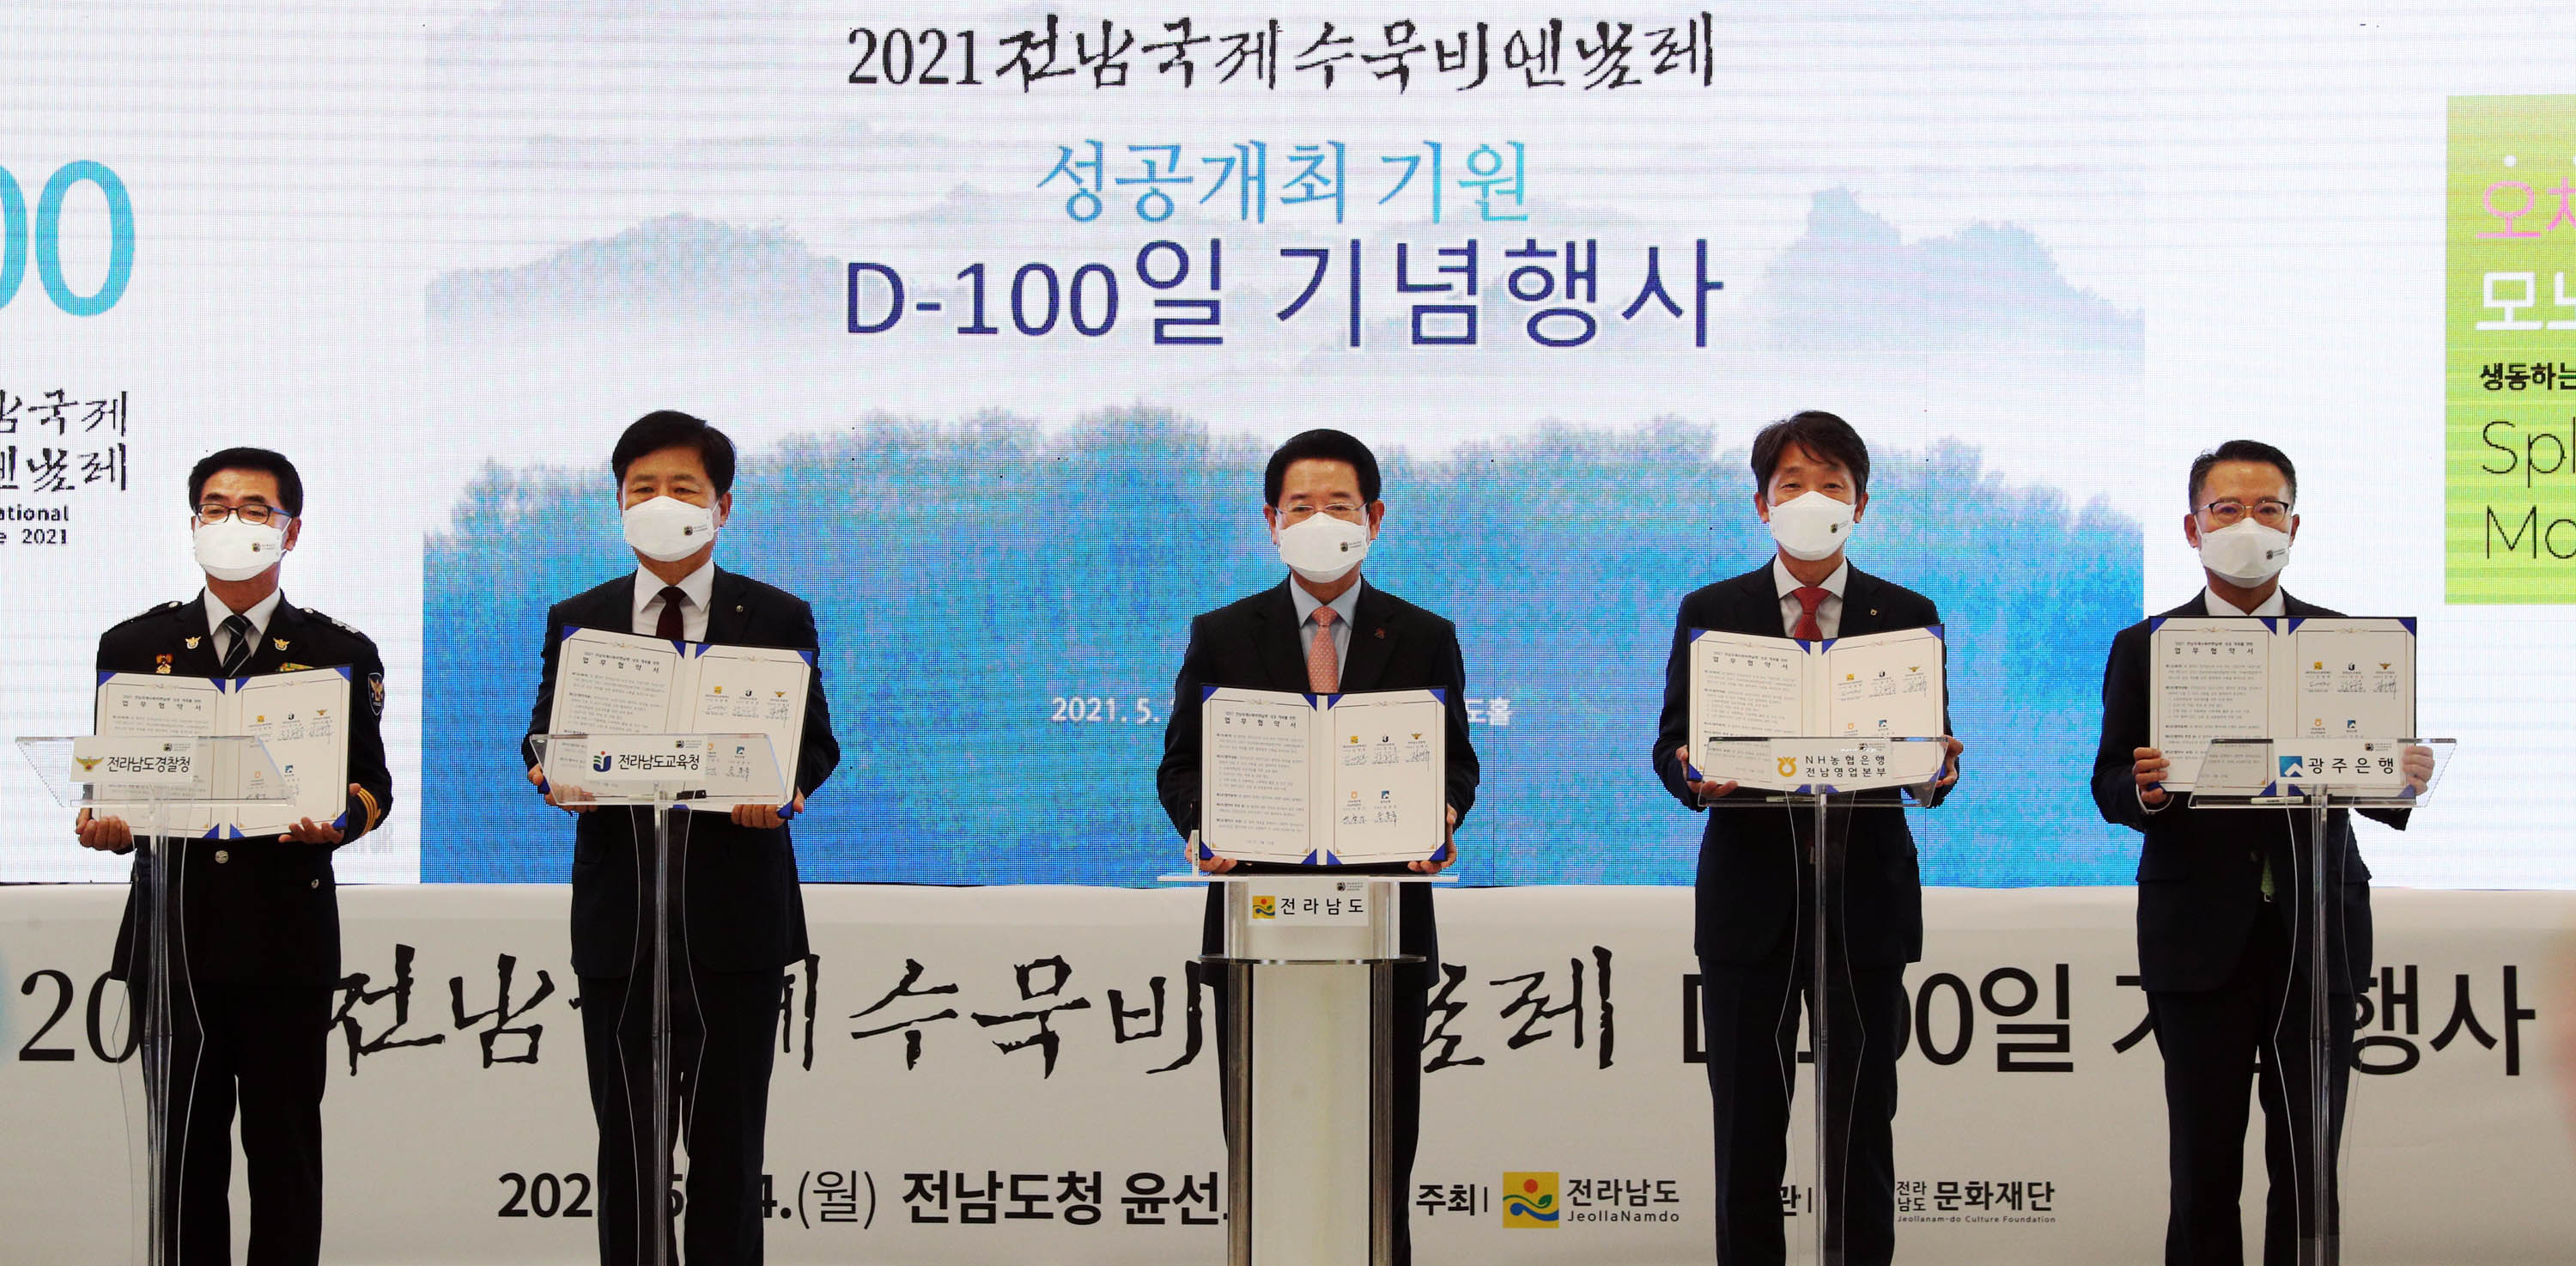 2021 전남국제수묵비엔날레 성공개최 기원 D-100 기념행사4